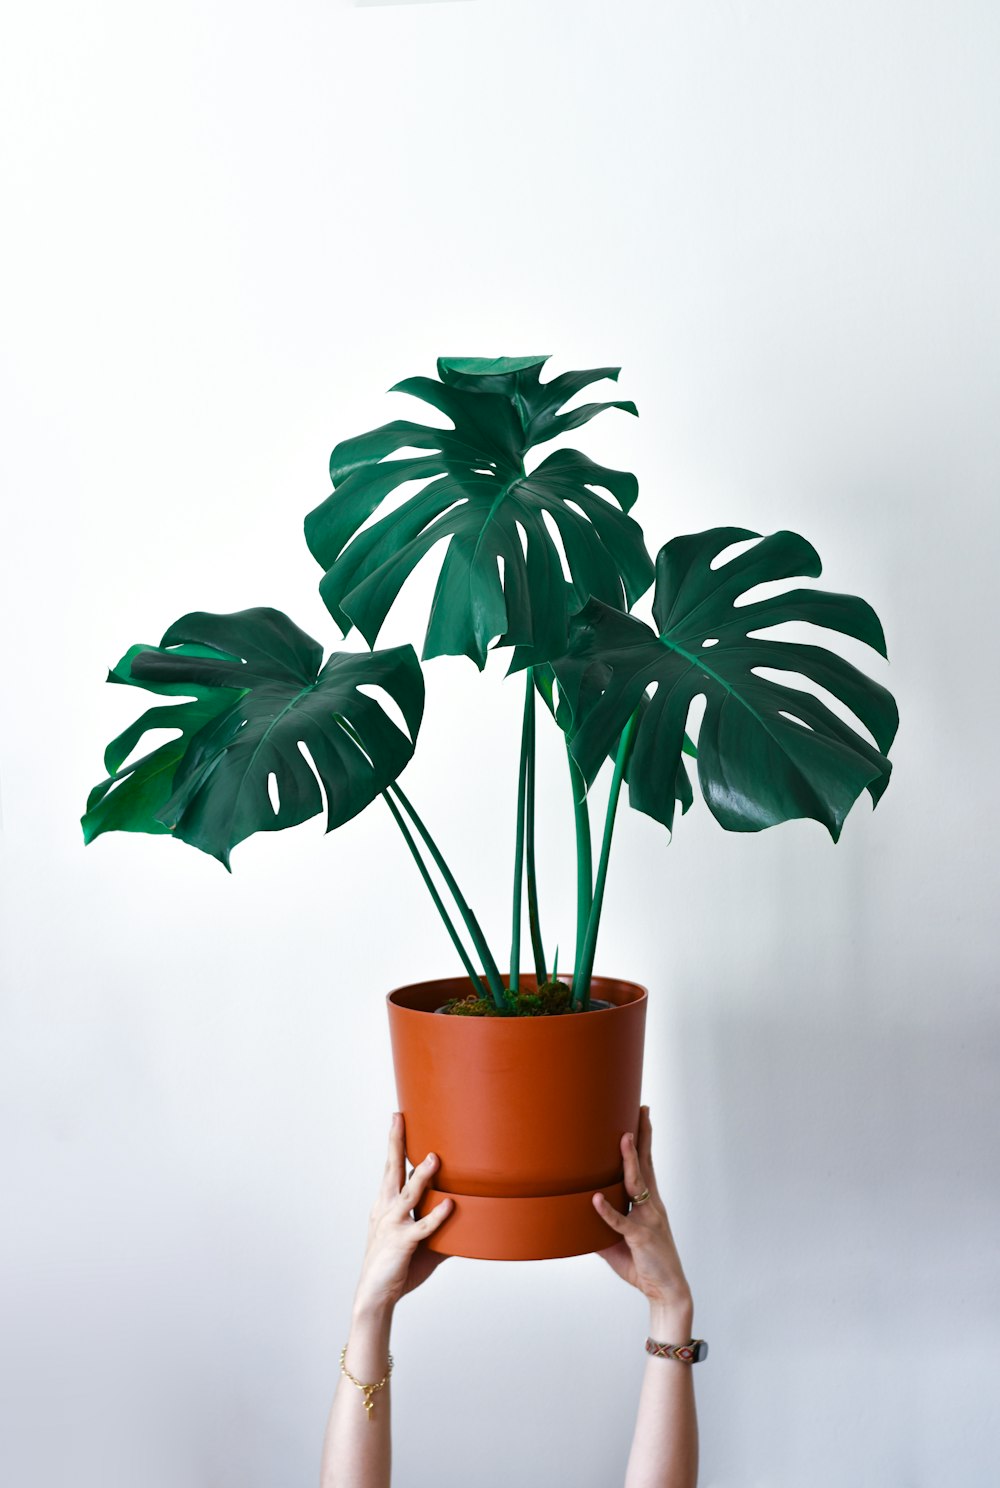 una persona che tiene una pianta in vaso con grandi foglie verdi